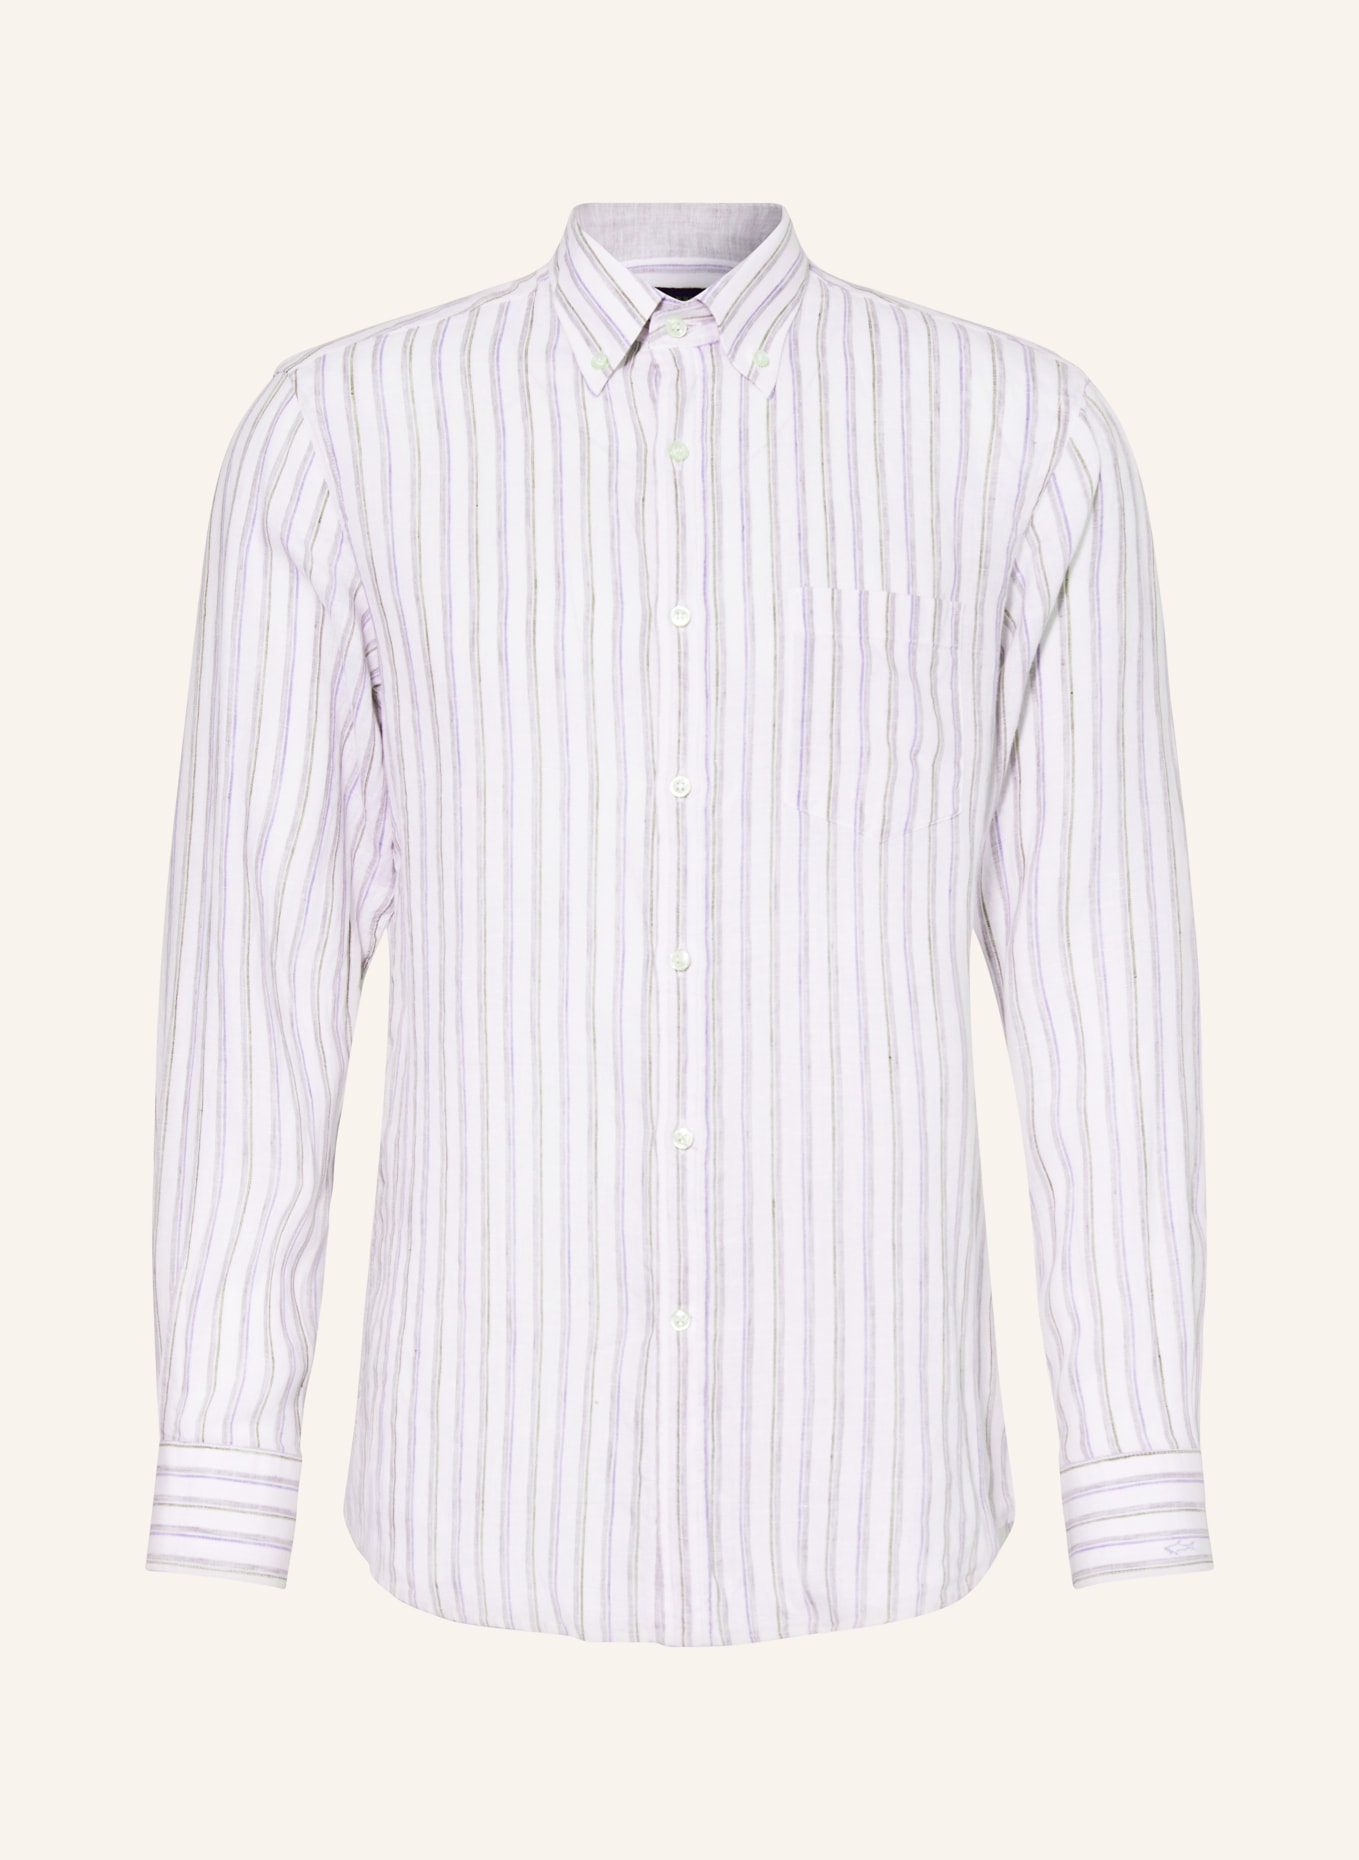 PAUL & SHARK Linen shirt regular fit, Color: WHITE/ BLUE/ GRAY (Image 1)